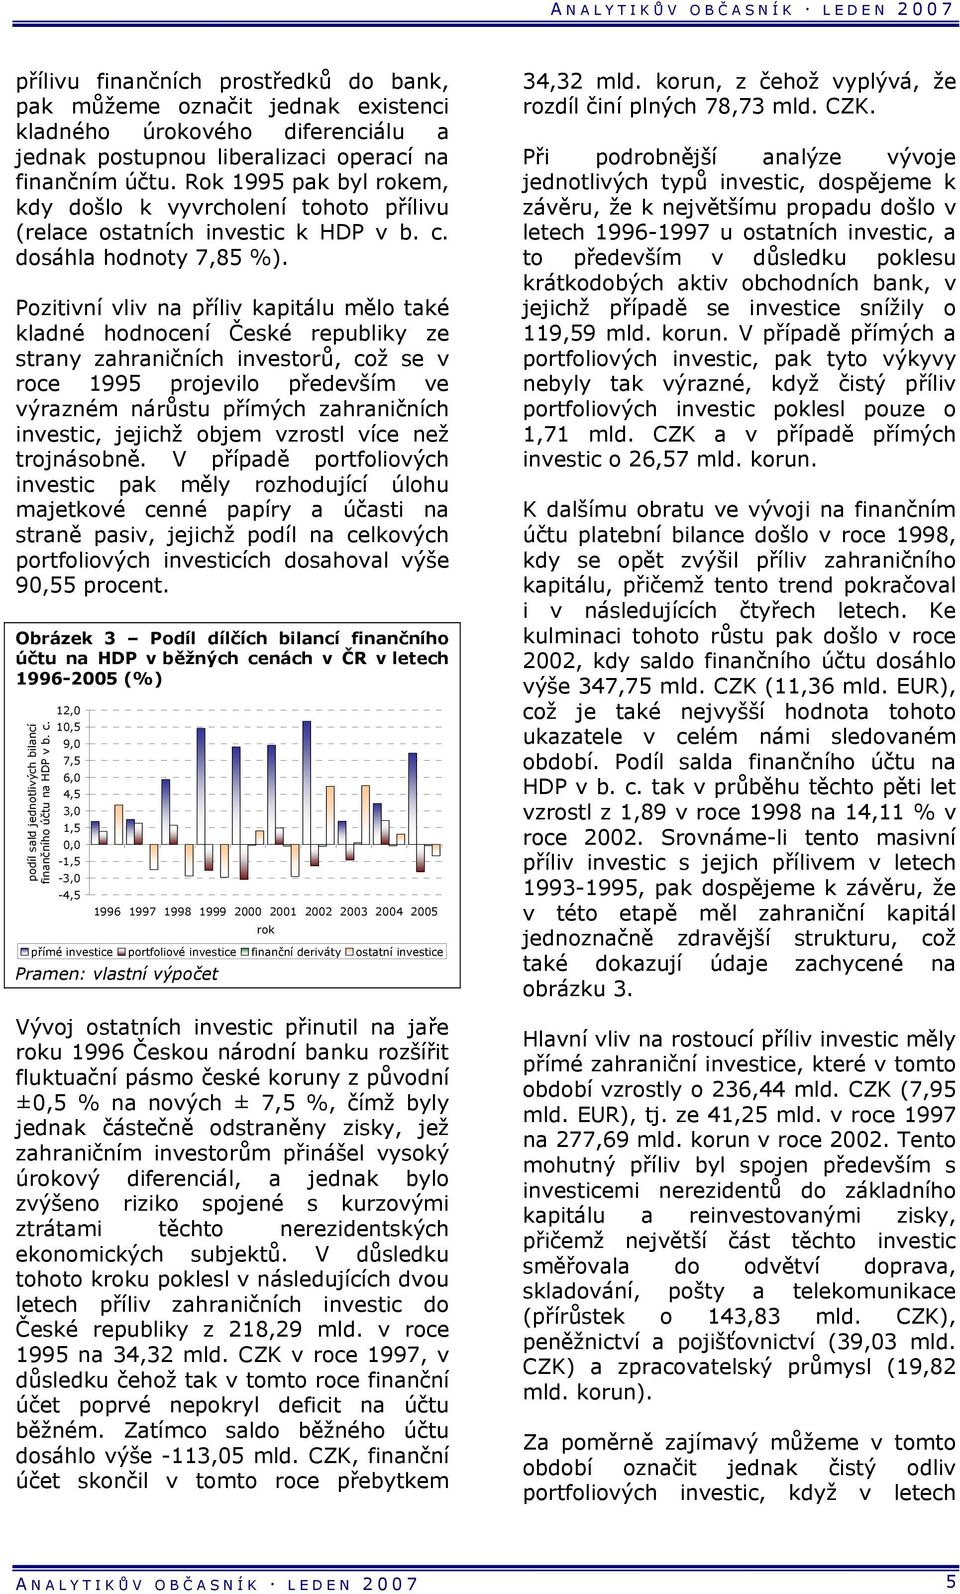 Pozitivní vliv na příliv kapitálu mělo také kladné hodnocení České republiky ze strany zahraničních investorů, což se v roce 1995 projevilo především ve výrazném nárůstu přímých zahraničních